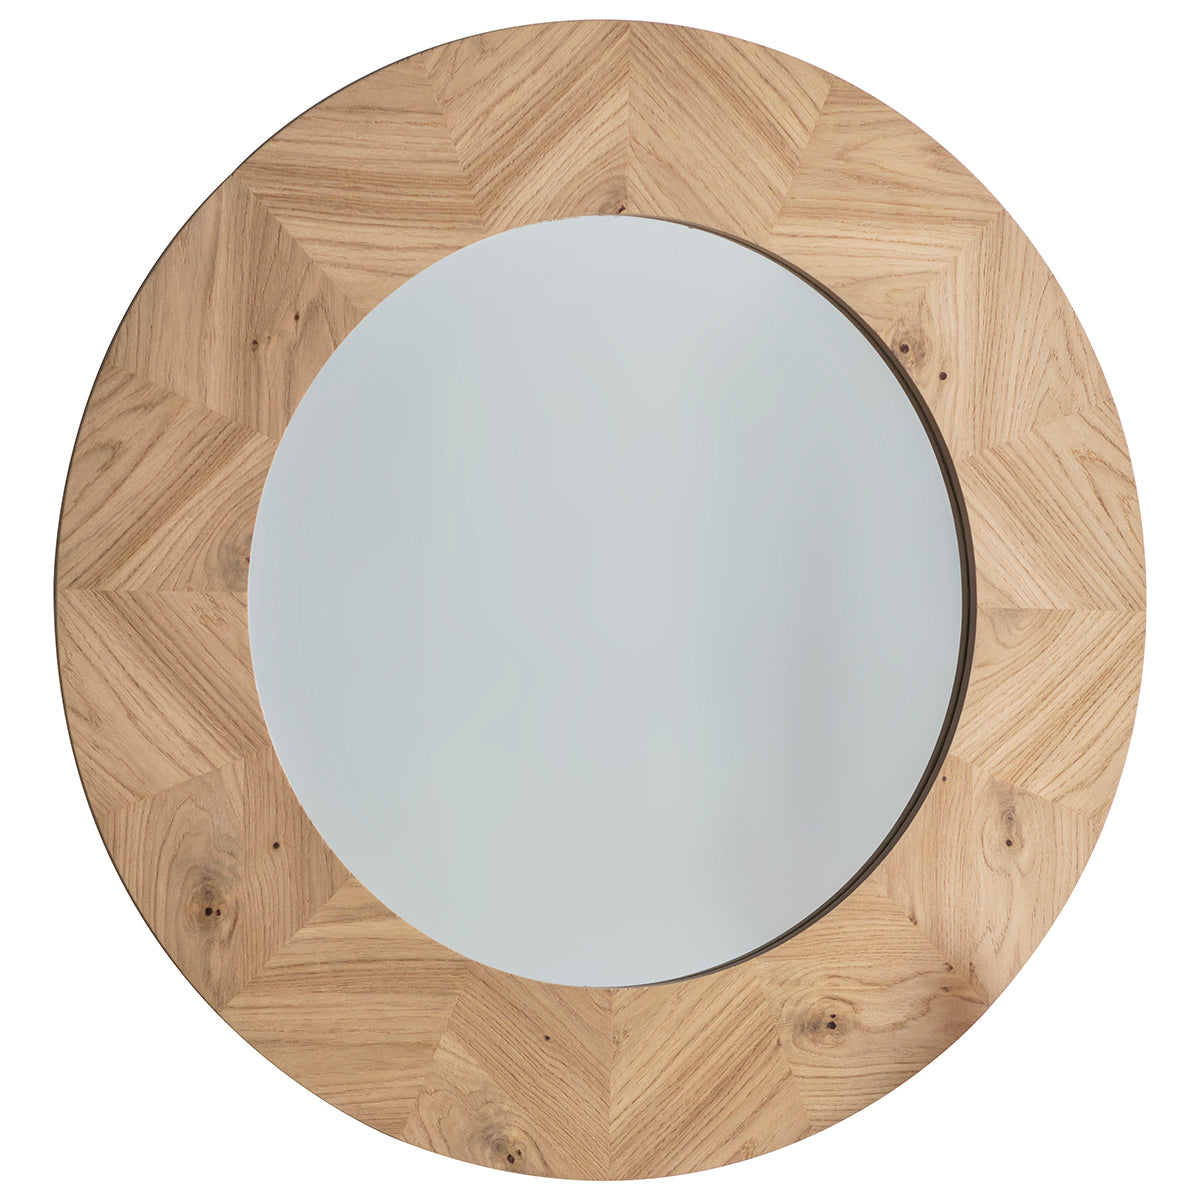 Jakob 900mm Round Wall Mirror in European Oak | malletandplane.com